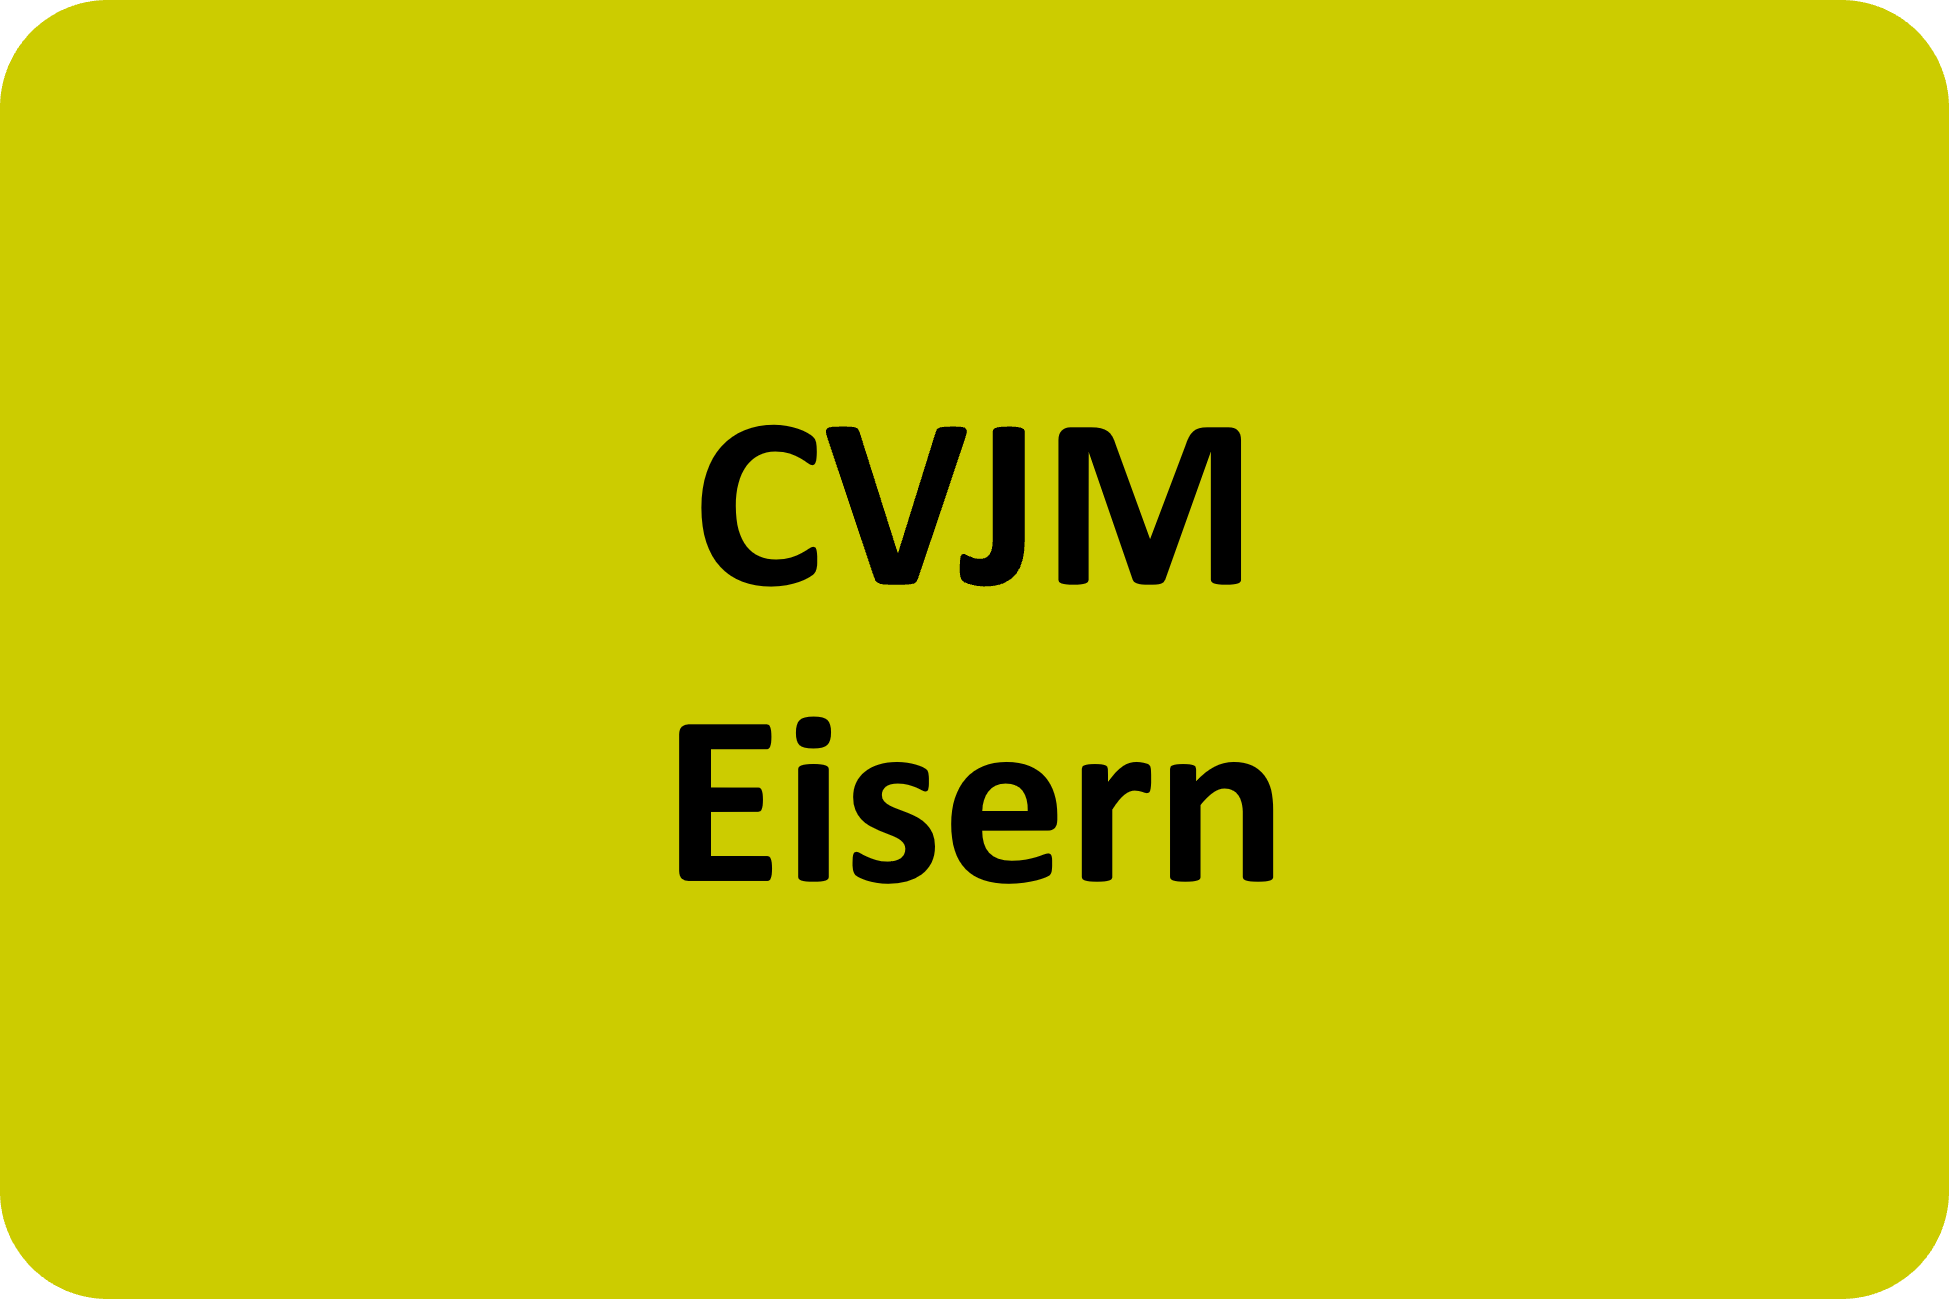 CVJM Eisern